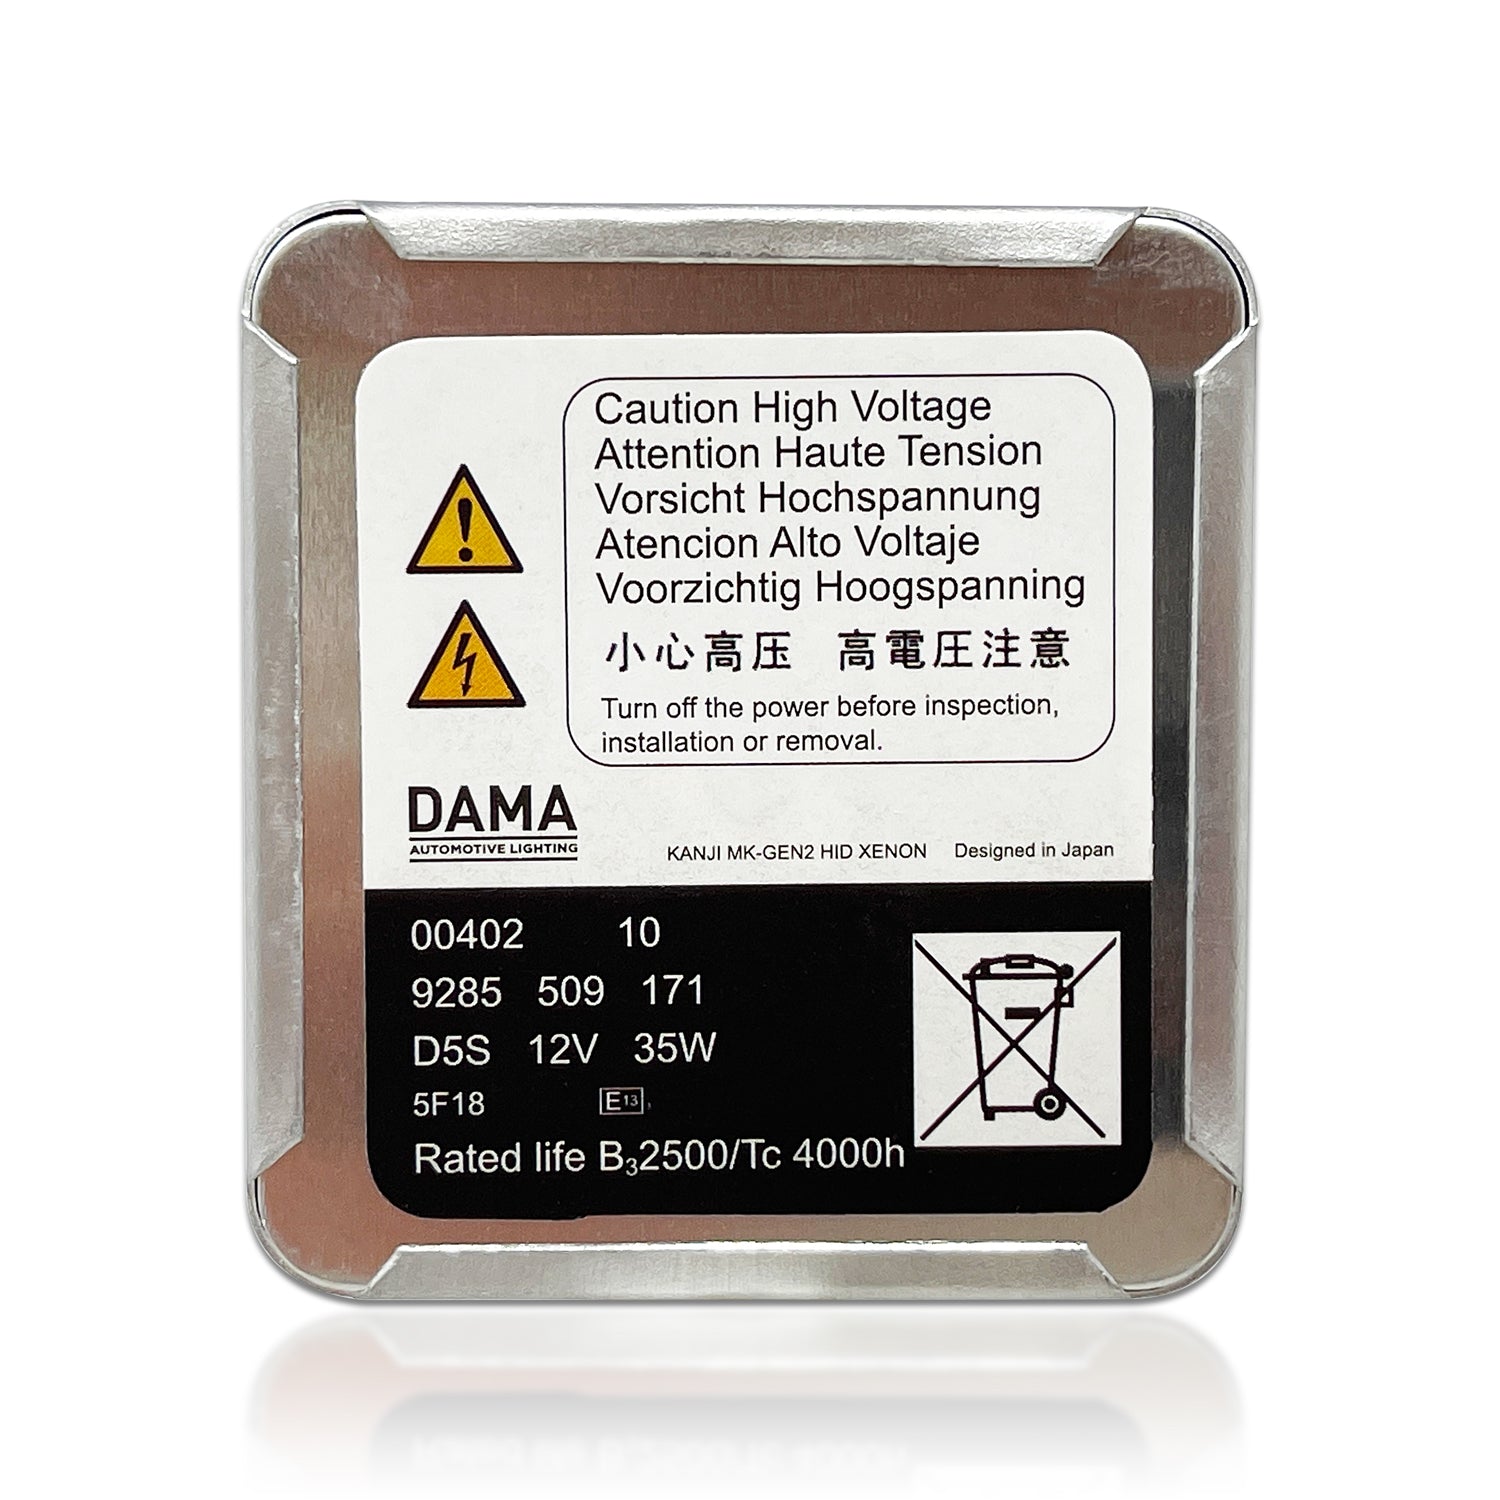 D5S DAMA Kanji Ultimate Vision LED D5S Headlight Bulbs 6000K 35W (Pack of 2)